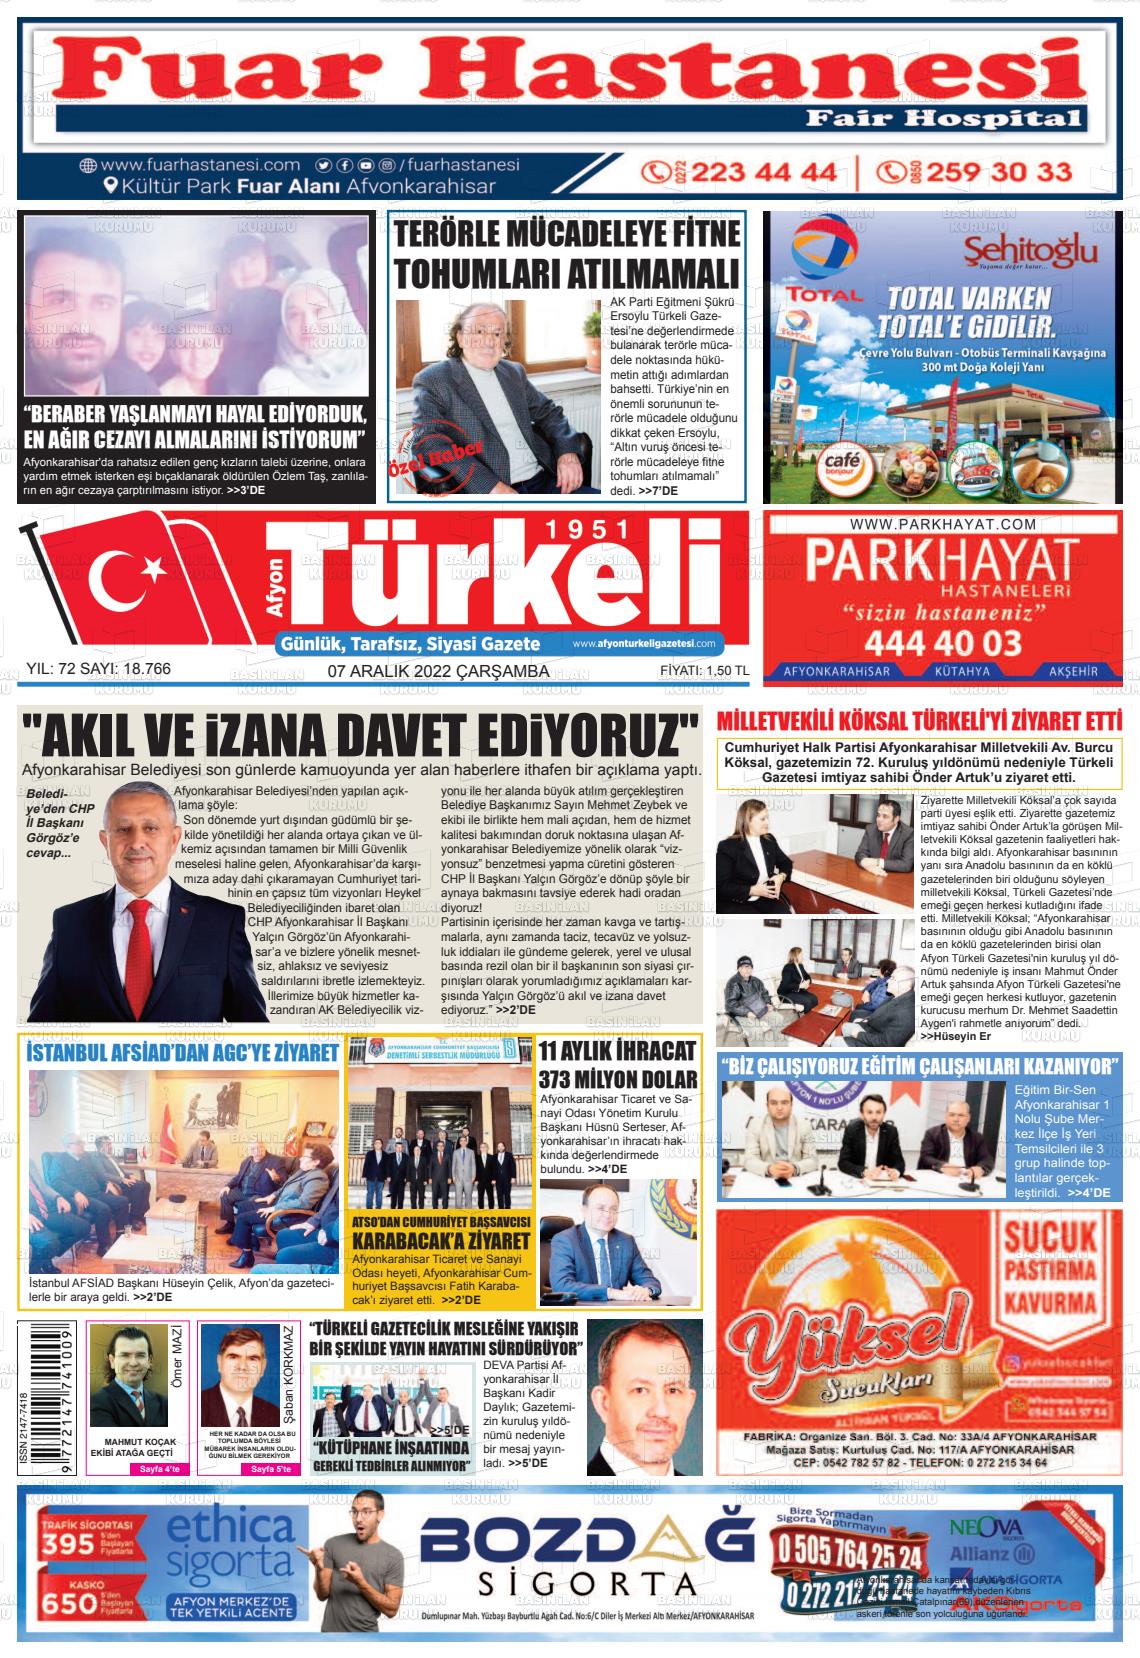 07 Aralık 2022 Afyon Türkeli Gazete Manşeti